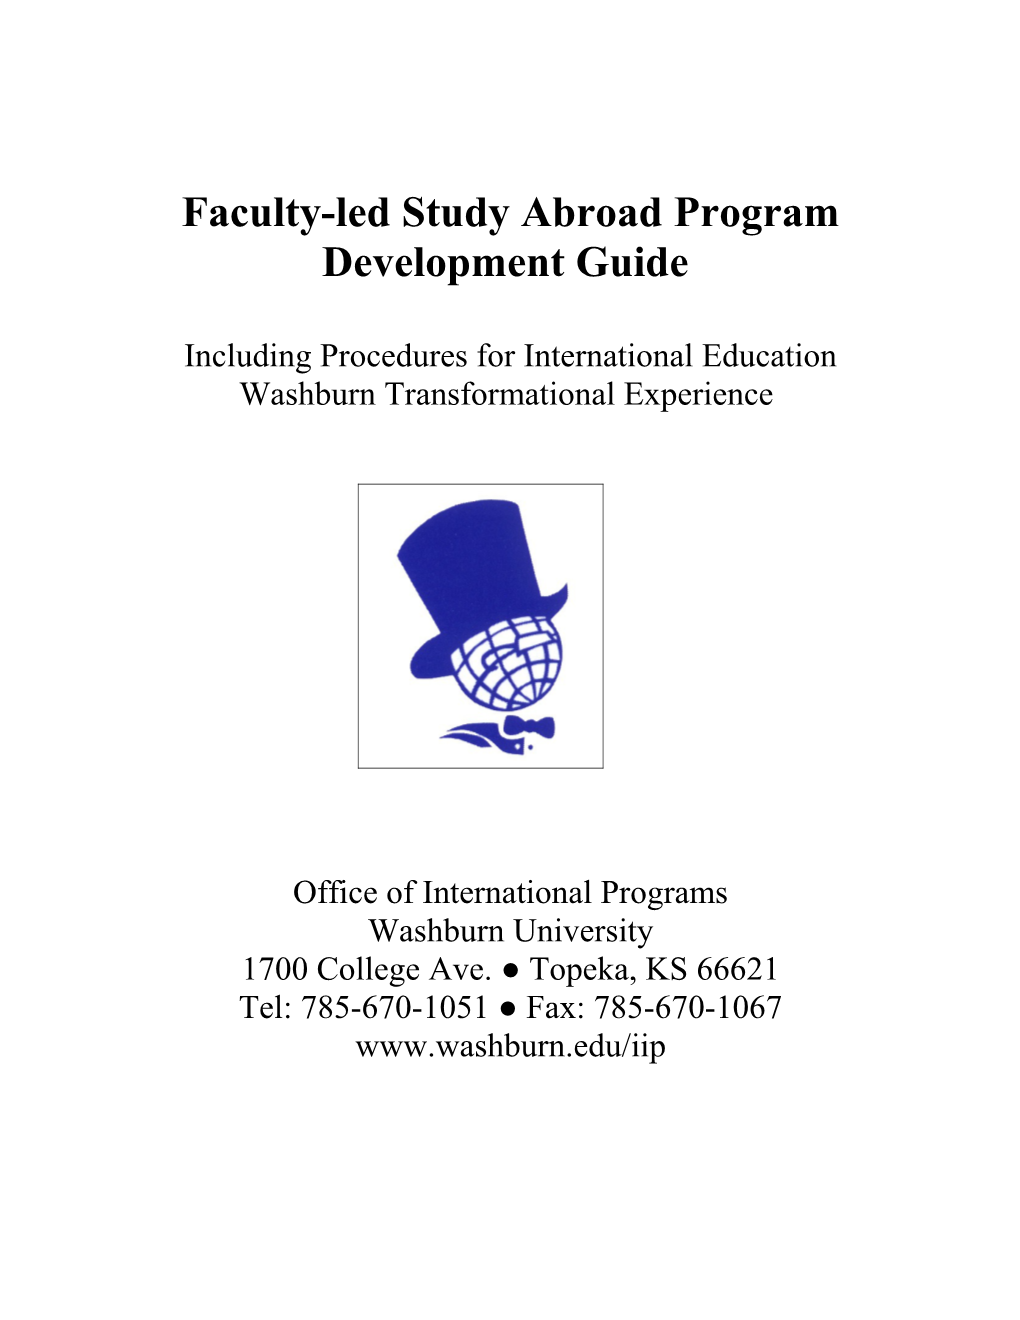 Washburn University S Faculty-Led Study Abroad